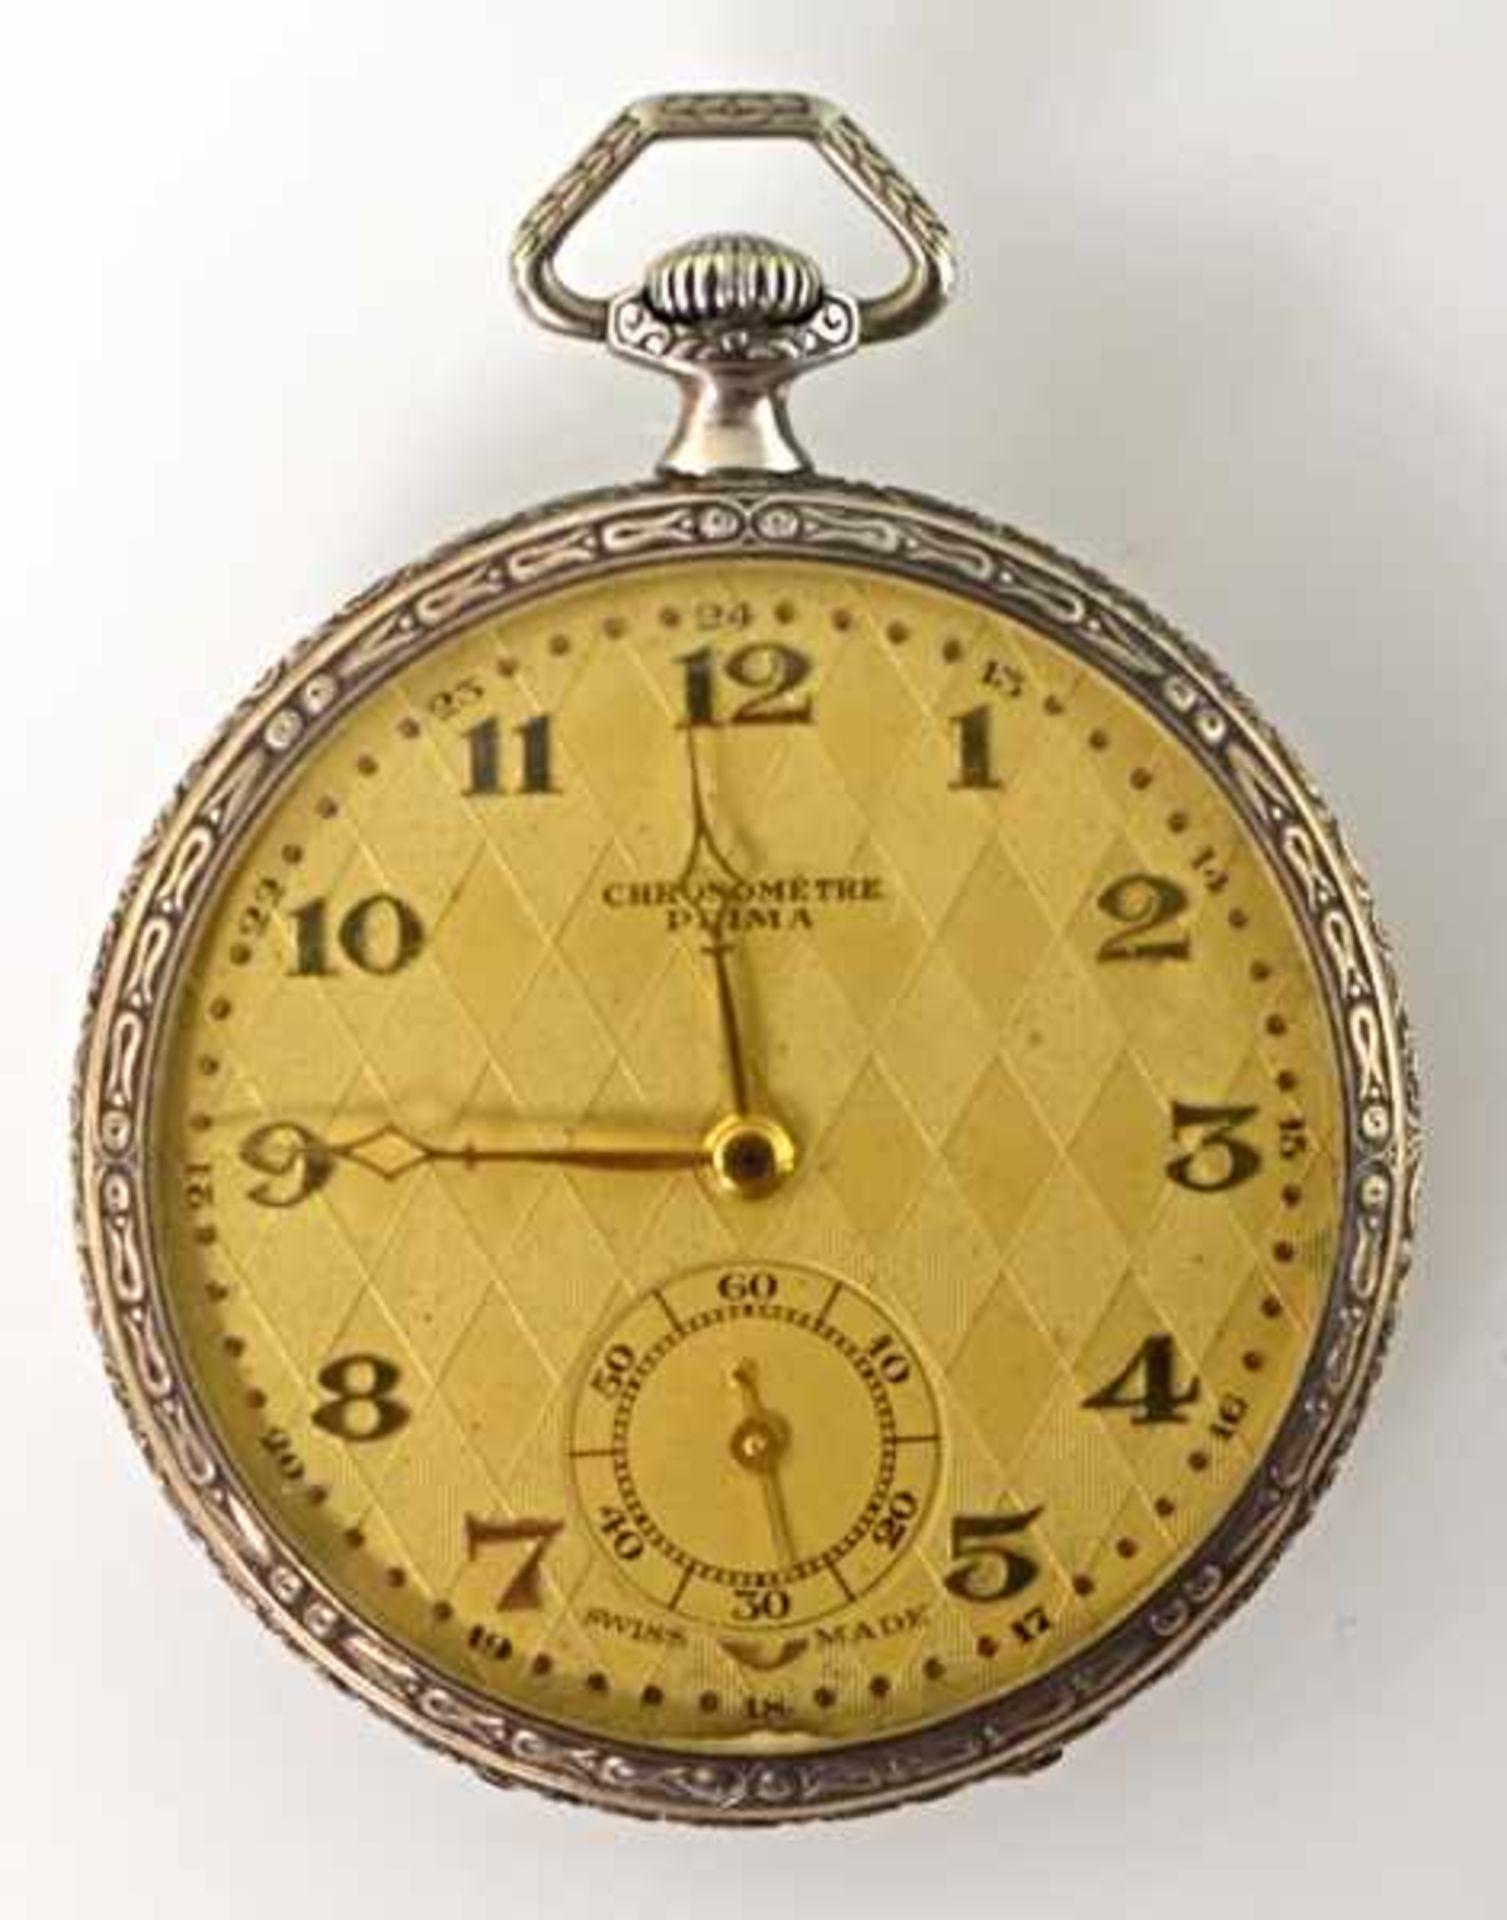 TASCHENUHR Chronomètre Prima, verziertes Silbergehäuse, goldfarbenes Ziffernblatt mit Rautendekor,